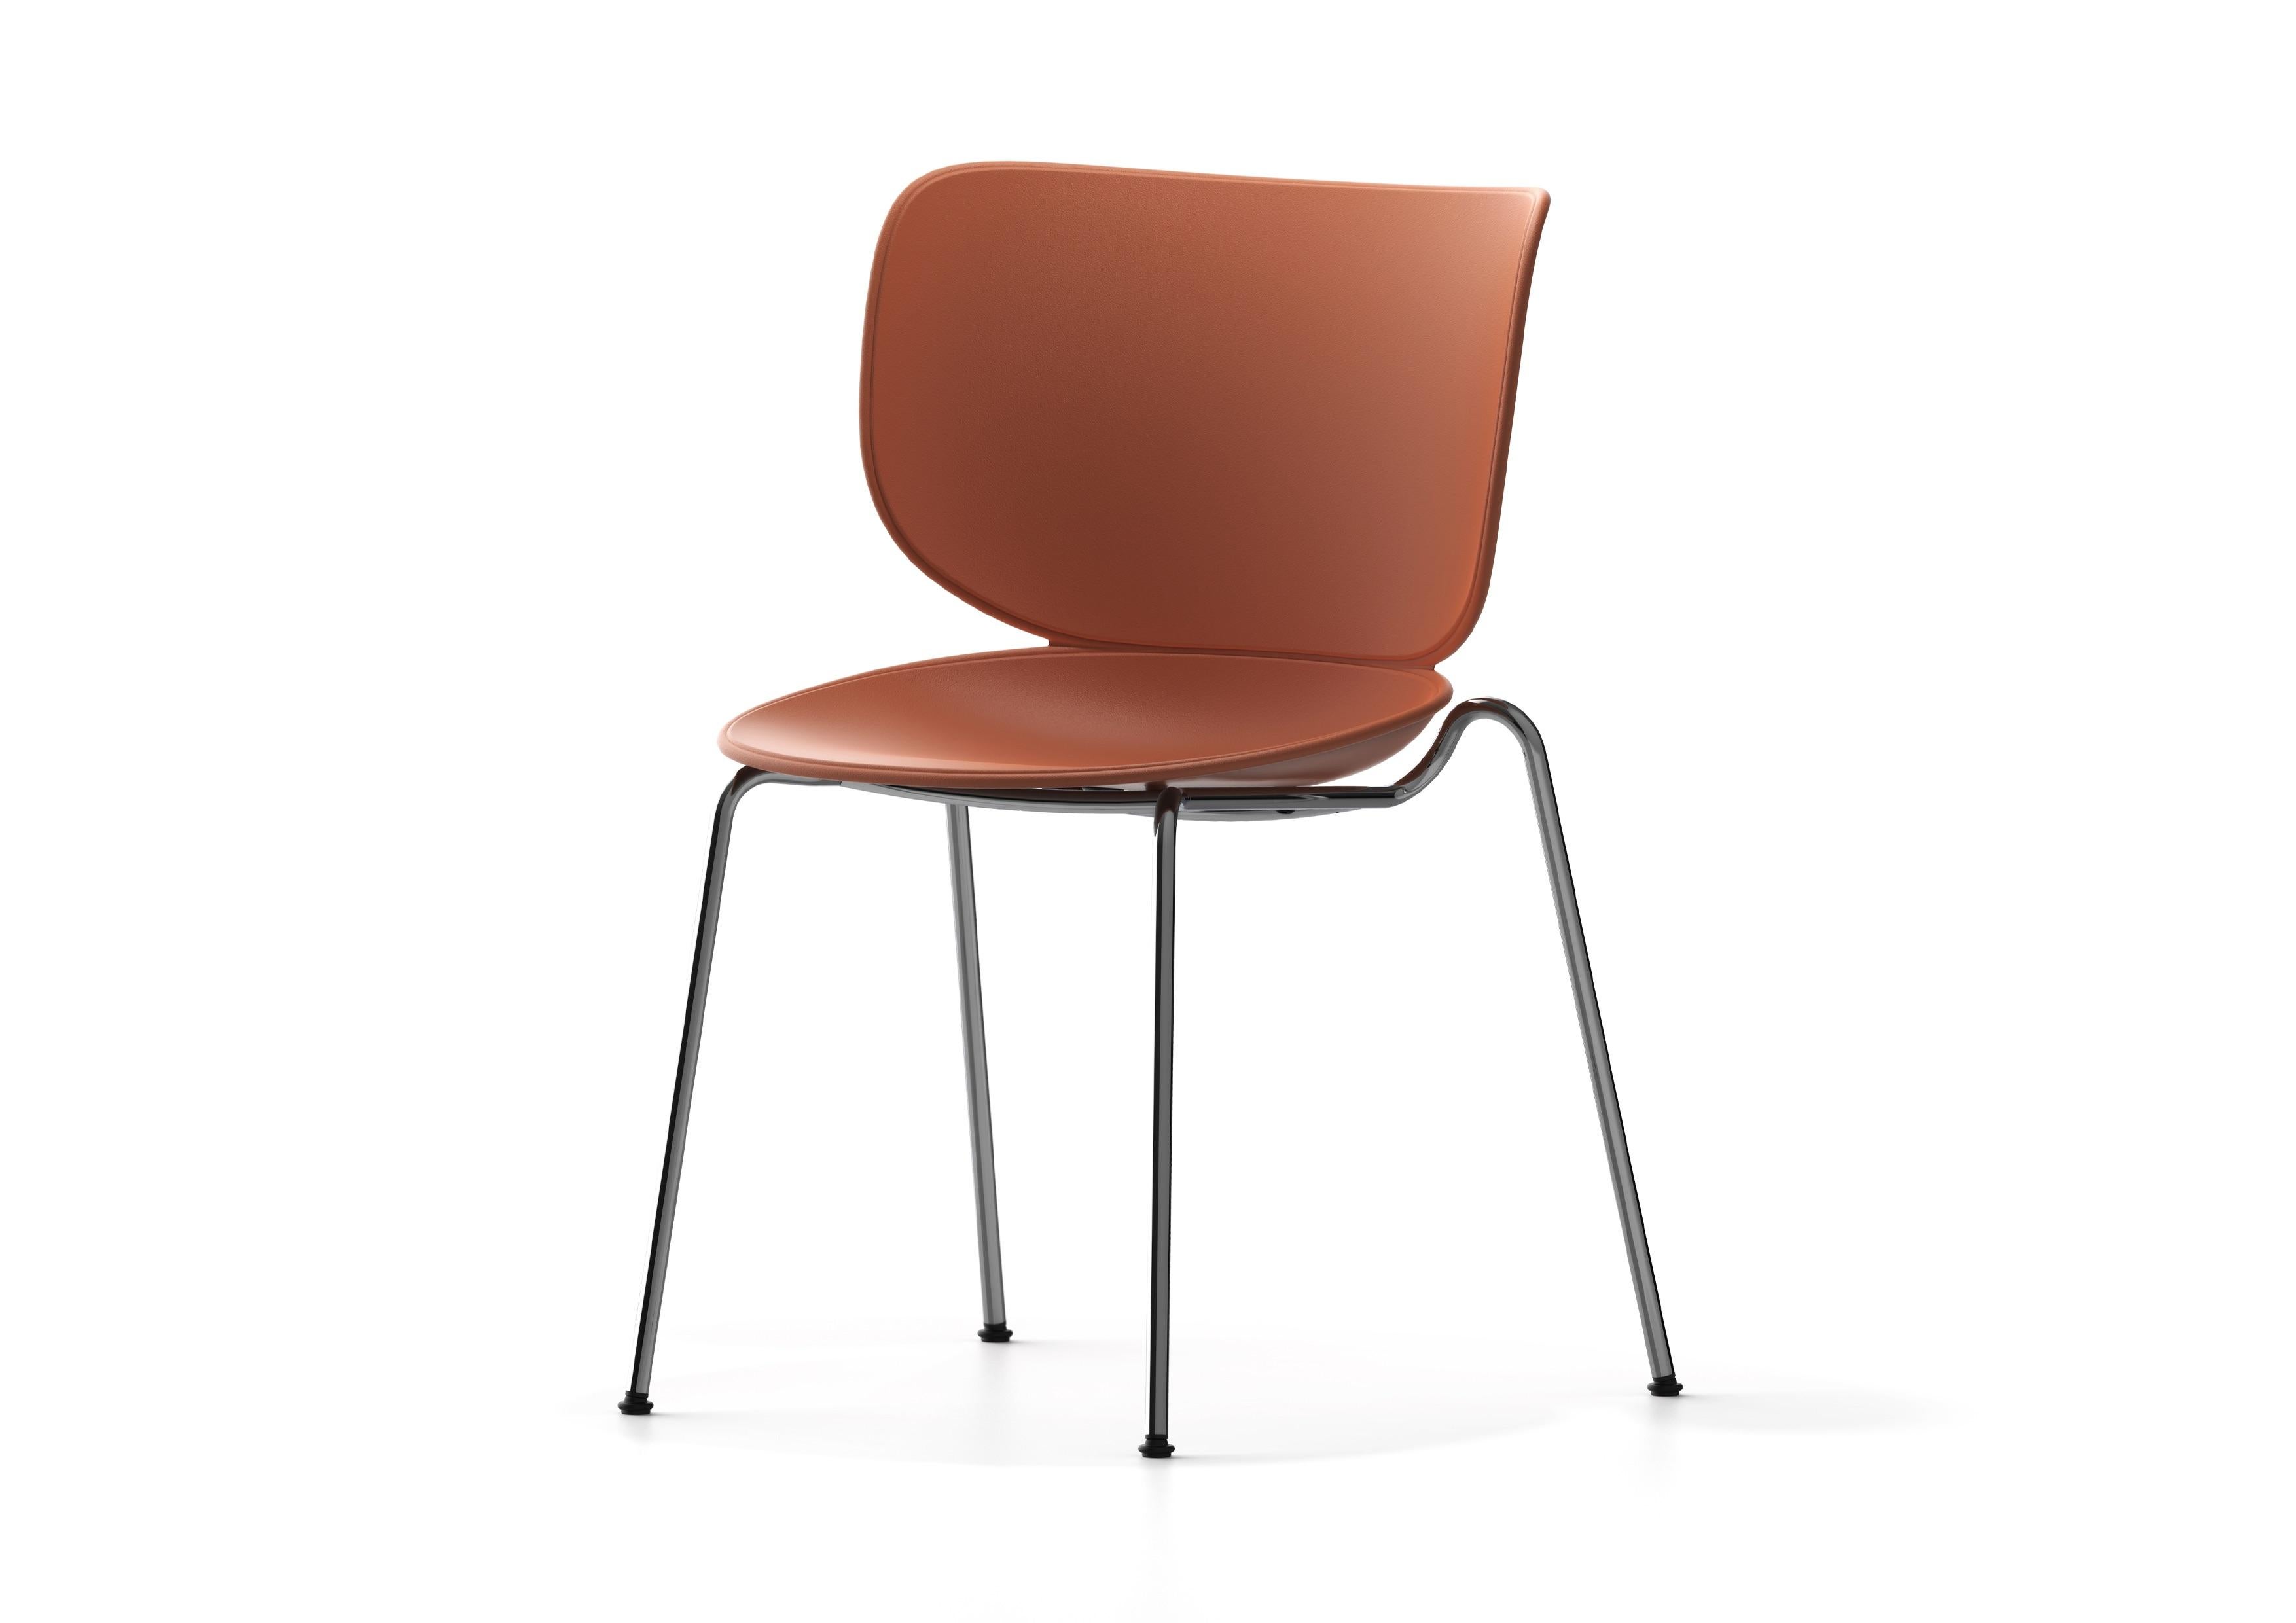 Der Hana Chair von Simone Bonanni verbindet zeitlosen Komfort mit unvergleichlicher Eleganz. Inspiriert von der Entfaltung einer Blume, besticht das einzigartige Design durch organische Formen, geschwungene Linien und eine blütenblattartige